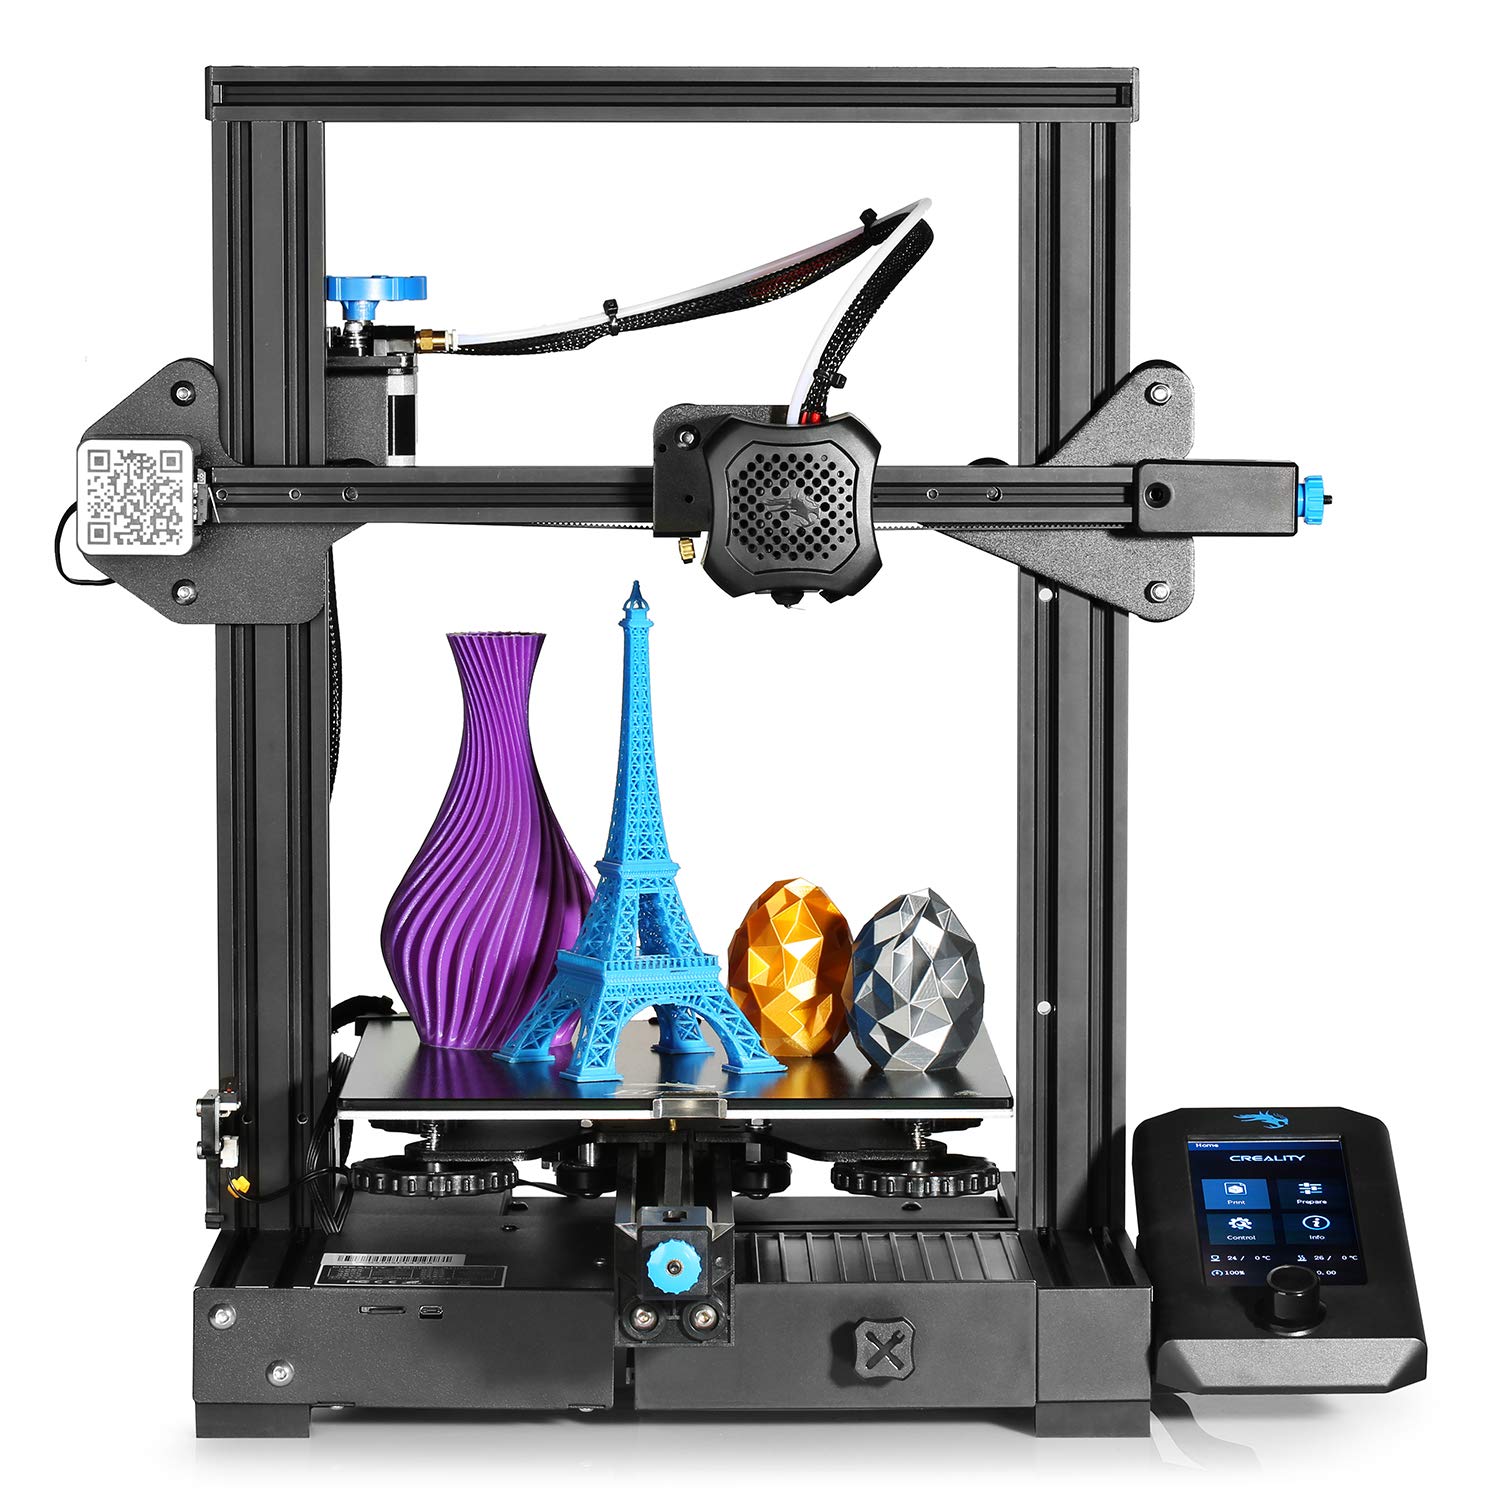 Creality Ender 3 V2 3D Printer (Refurbished) $170